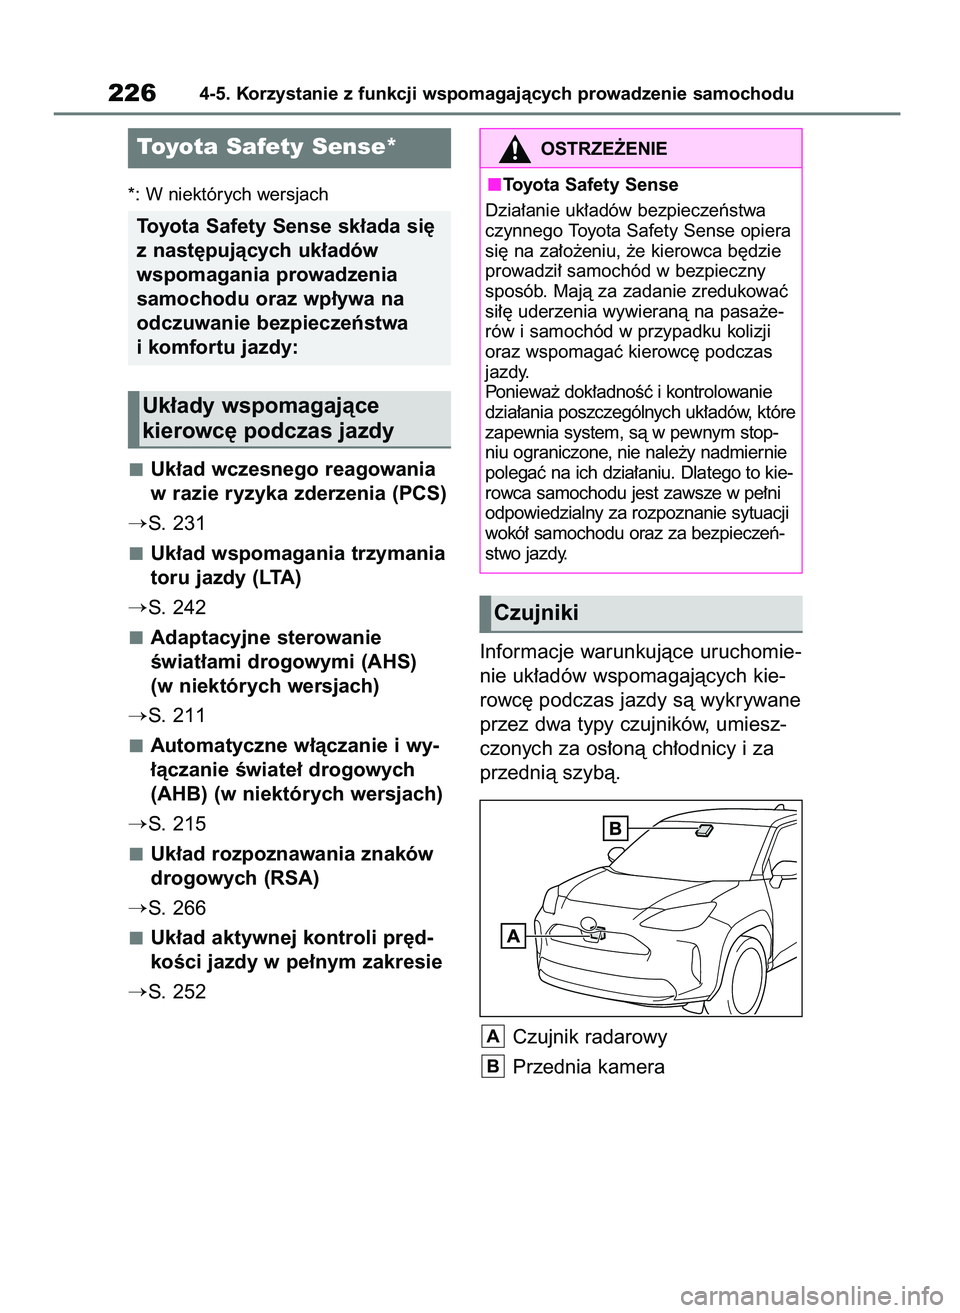 TOYOTA YARIS CROSS 2021  Instrukcja obsługi (in Polish) *: W niektórych wersjach
Uk∏ad wczesnego reagowania
w razie ryzyka zderzenia (PCS)
S. 231
Uk∏ad wspomagania trzymania
toru jazdy (LTA)
S. 242
Adaptacyjne sterowanie 
Êwiat∏ami drogowymi (AHS